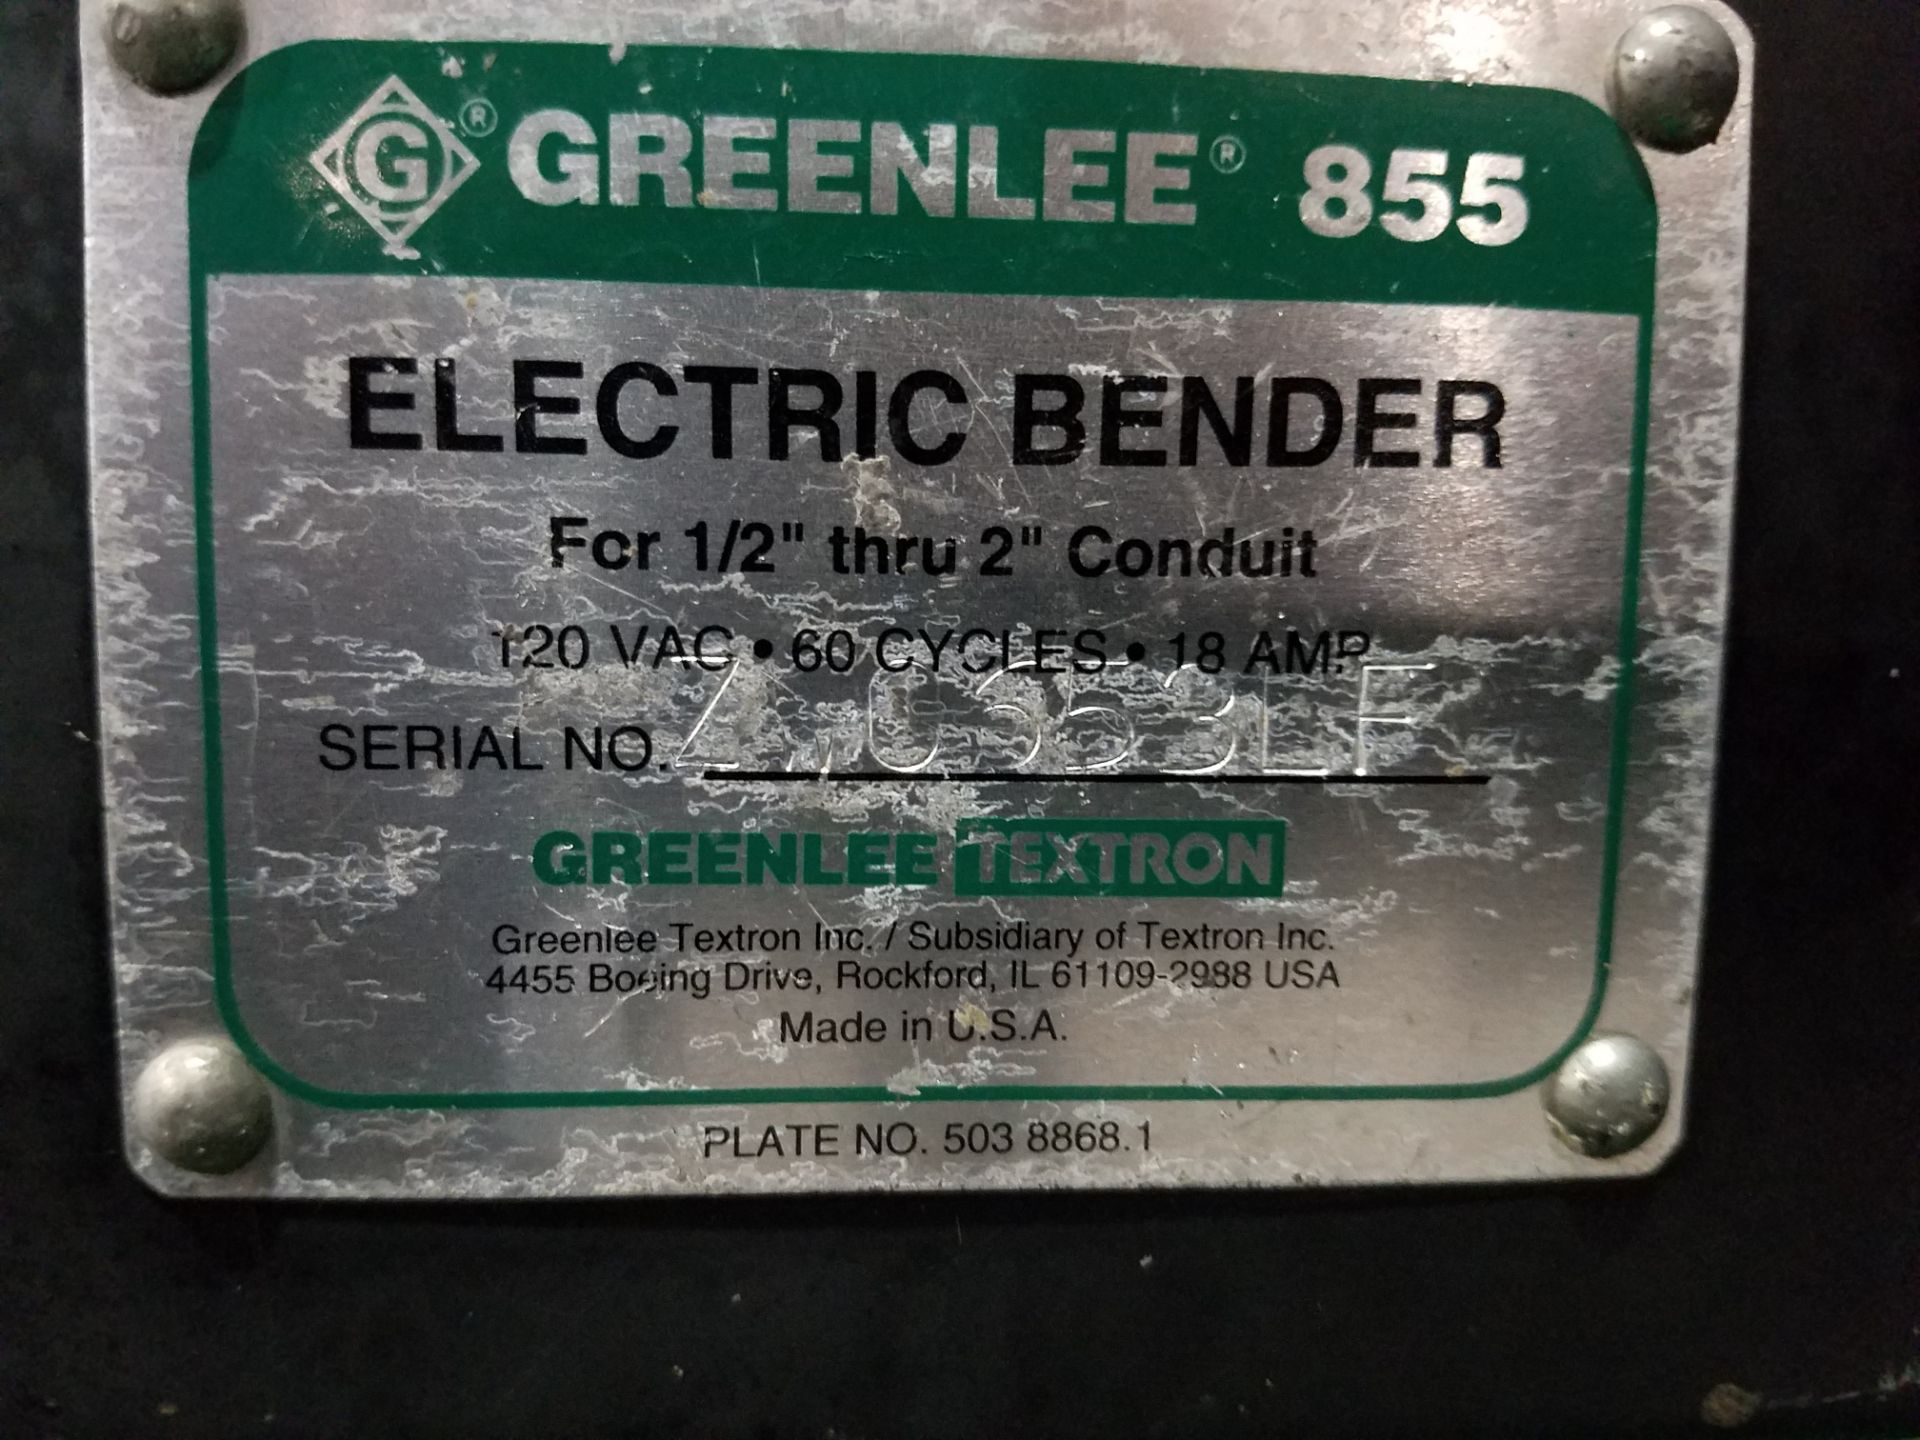 Greenlee Smart Bender Model 855 Electric Conduit Bender, s/n ZC653LF, 1/2" Thru 2" Conduit, 110/1/60 - Image 6 of 6